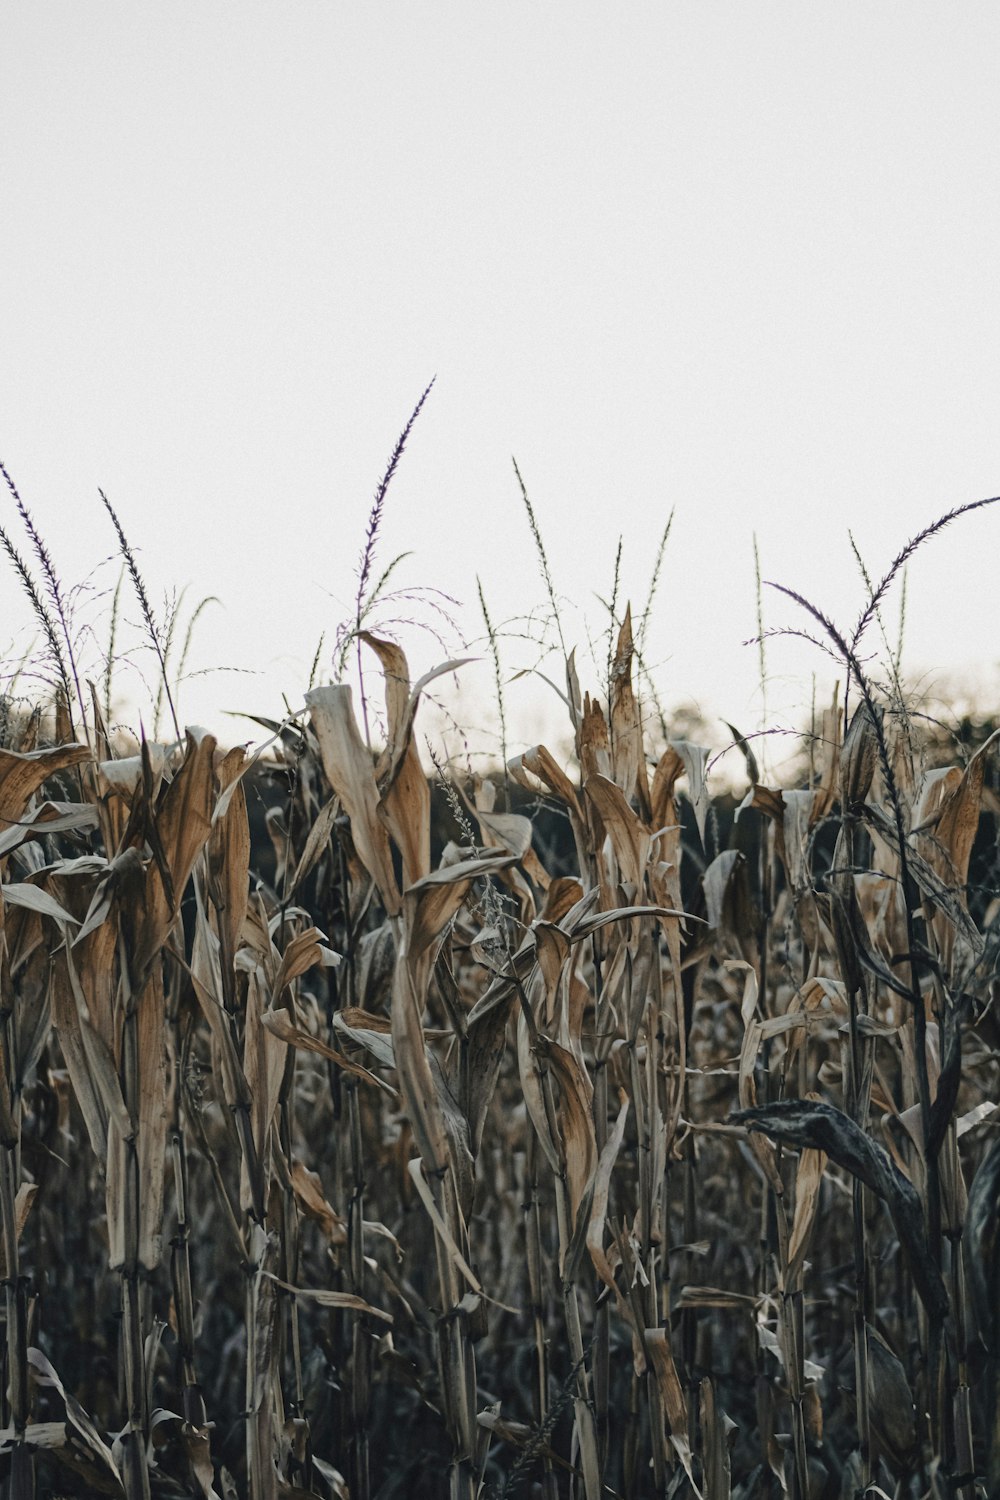 Un campo de maíz se muestra en primer plano